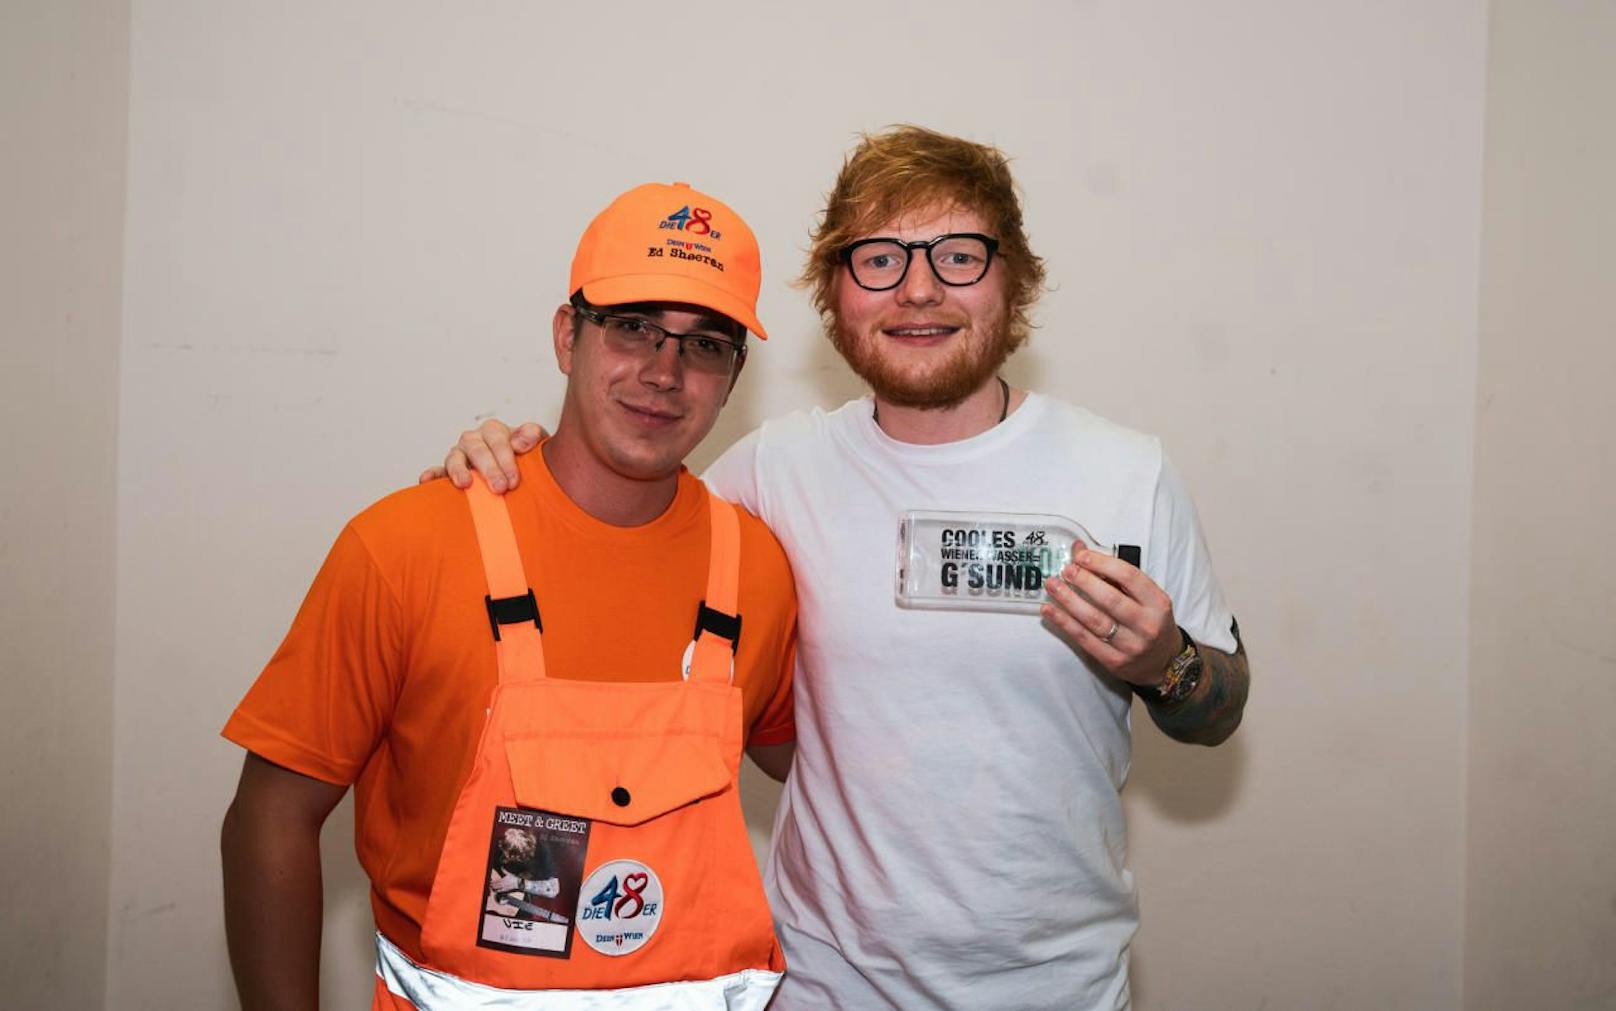 Einmaliges Erlebnis für MA48-Straßenkehrer Michael: Er durfte Superstar Ed Sheeran treffen. (c) MA48